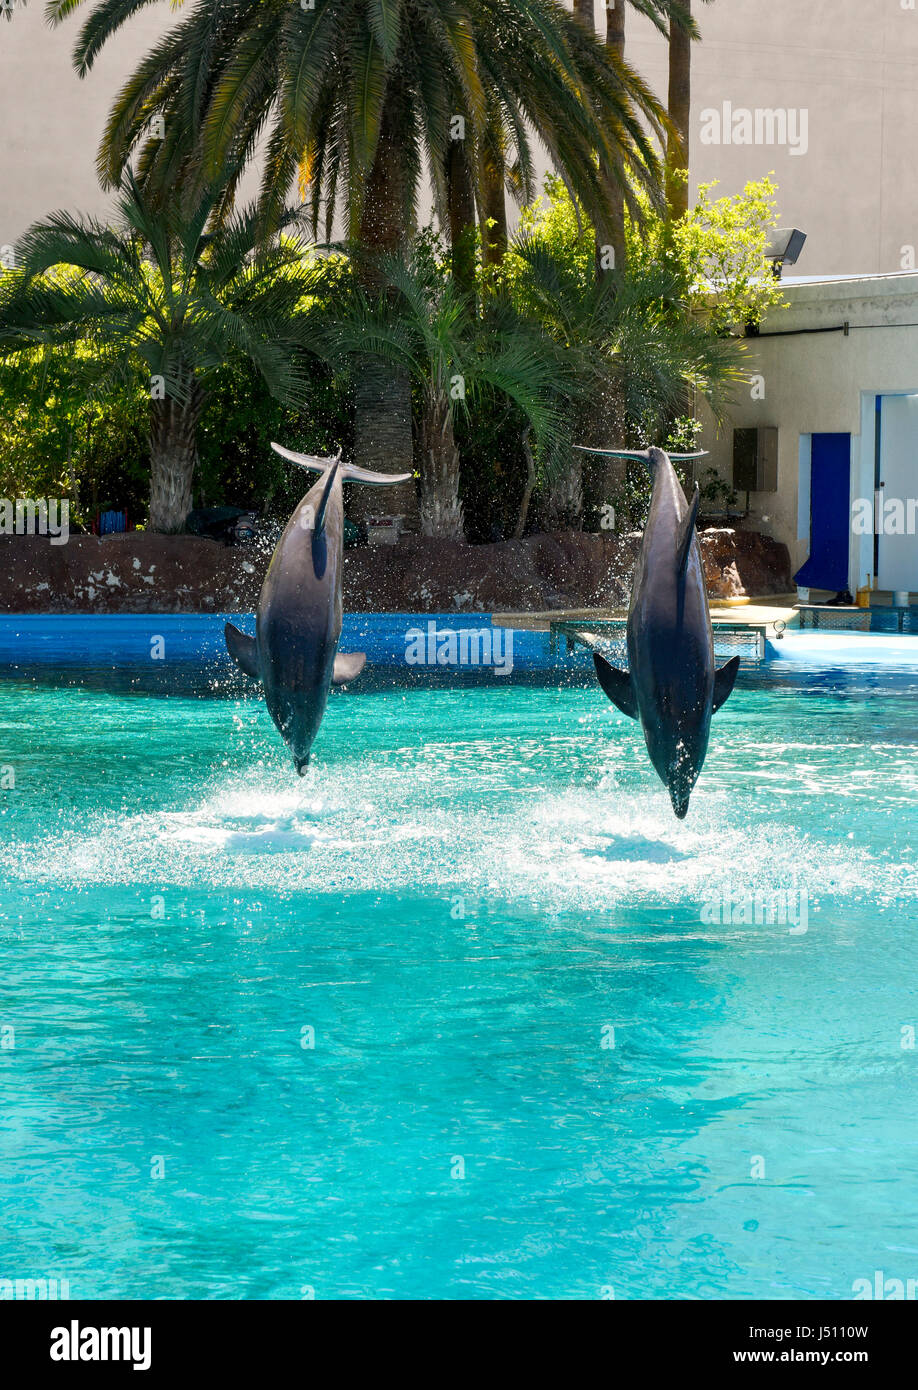 Due dolfins saltare fuori dall'acqua in unisono su comand da un trainer al Mirage, giardino segreto di Las Vegas, Nevada. Foto Stock